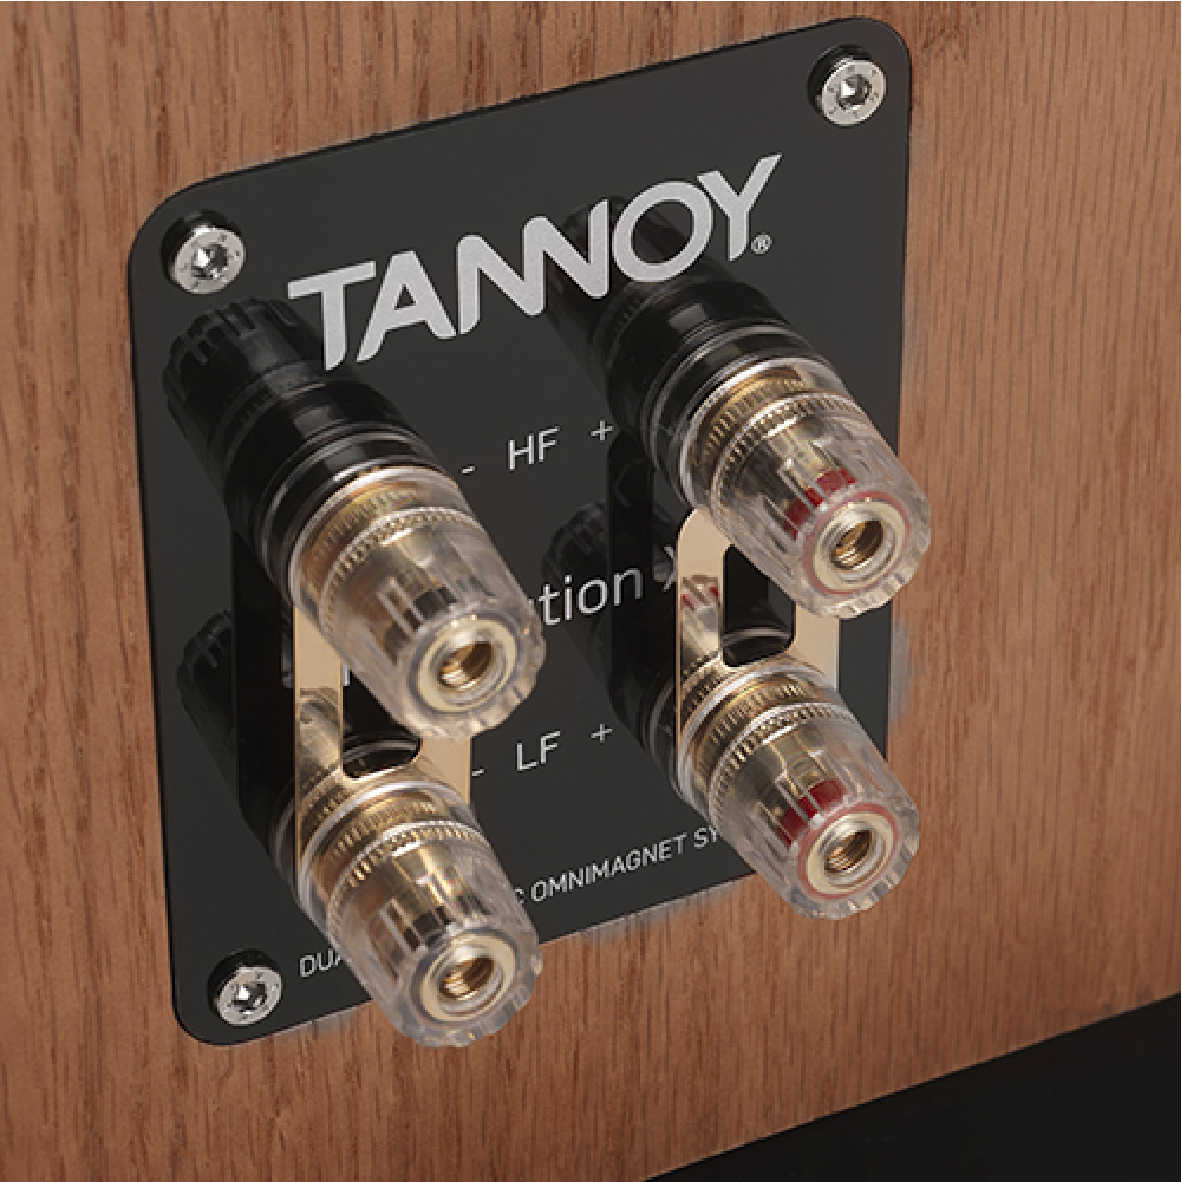 英國 TANNOY Revolution XT Mini 兩色可選 雙同軸單體 書架喇叭 | 金曲音響